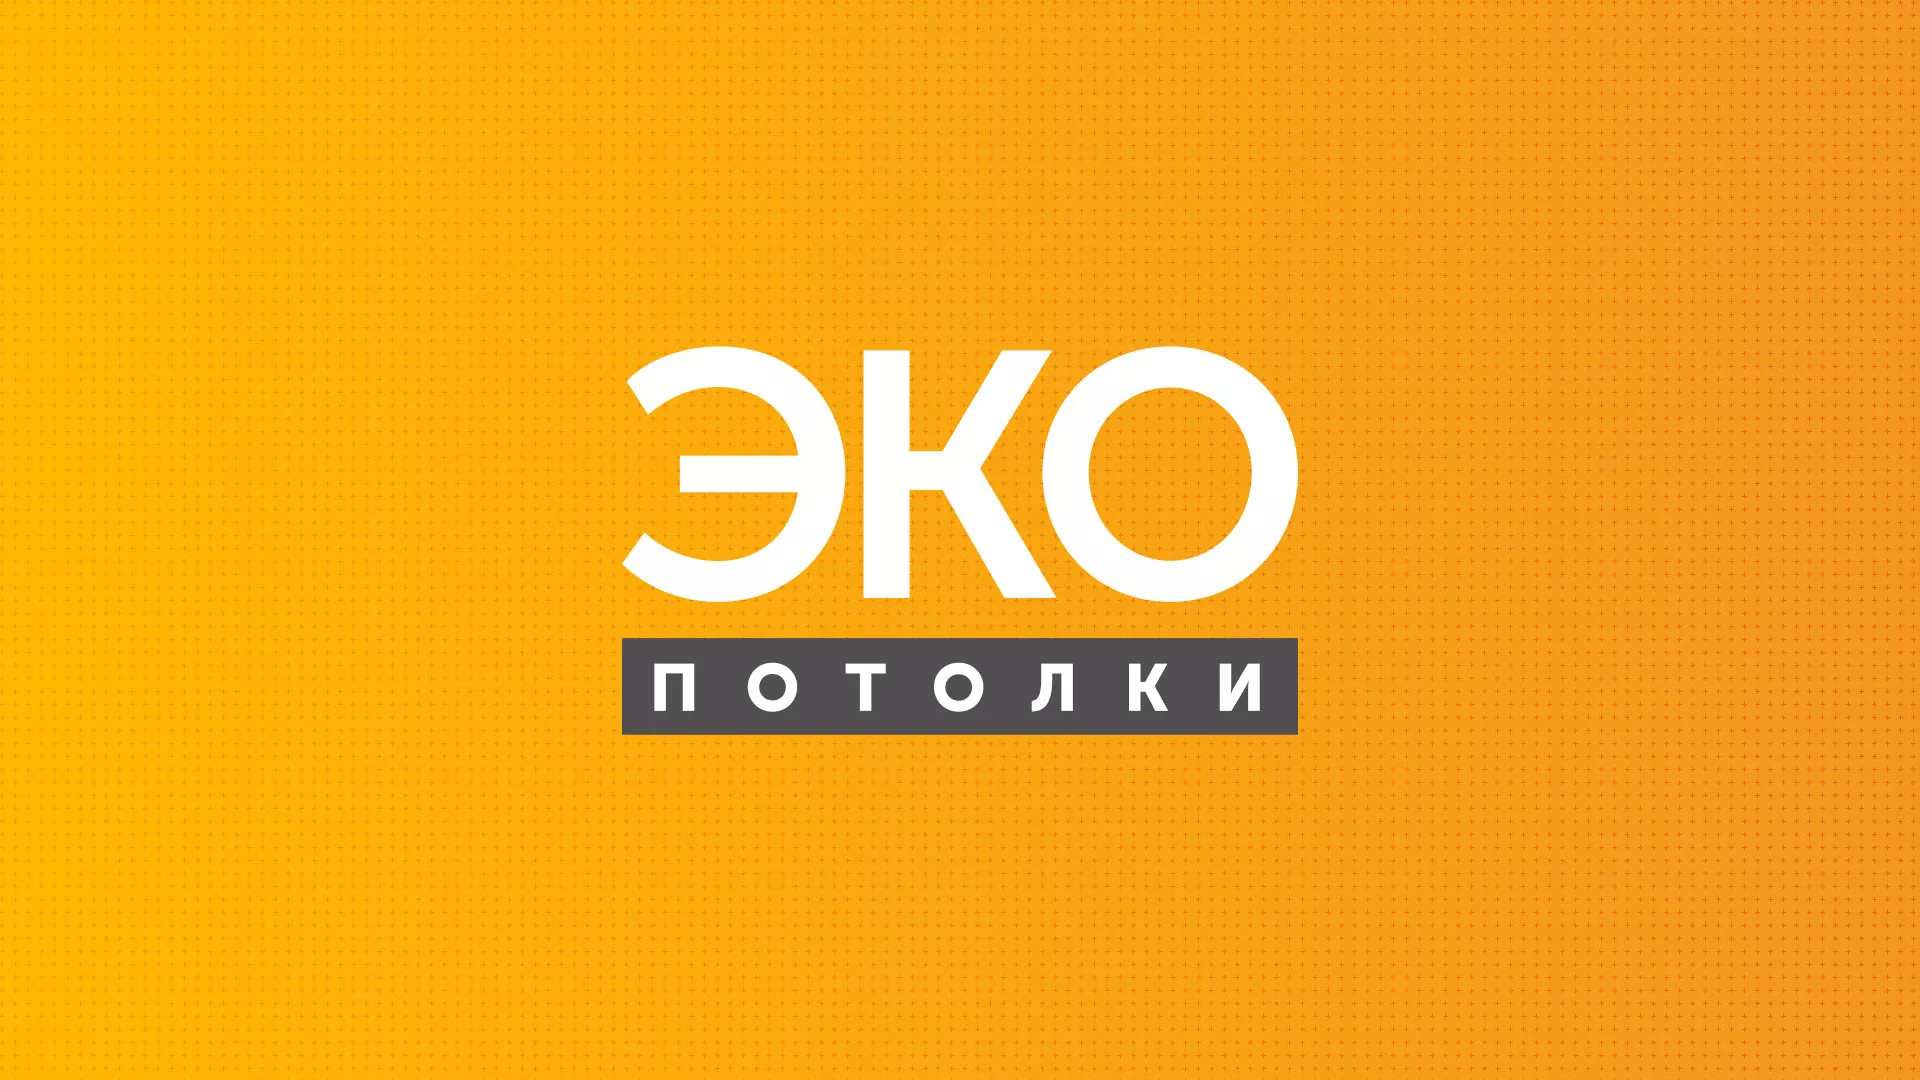 Разработка сайта по натяжным потолкам «Эко Потолки» в Болхове